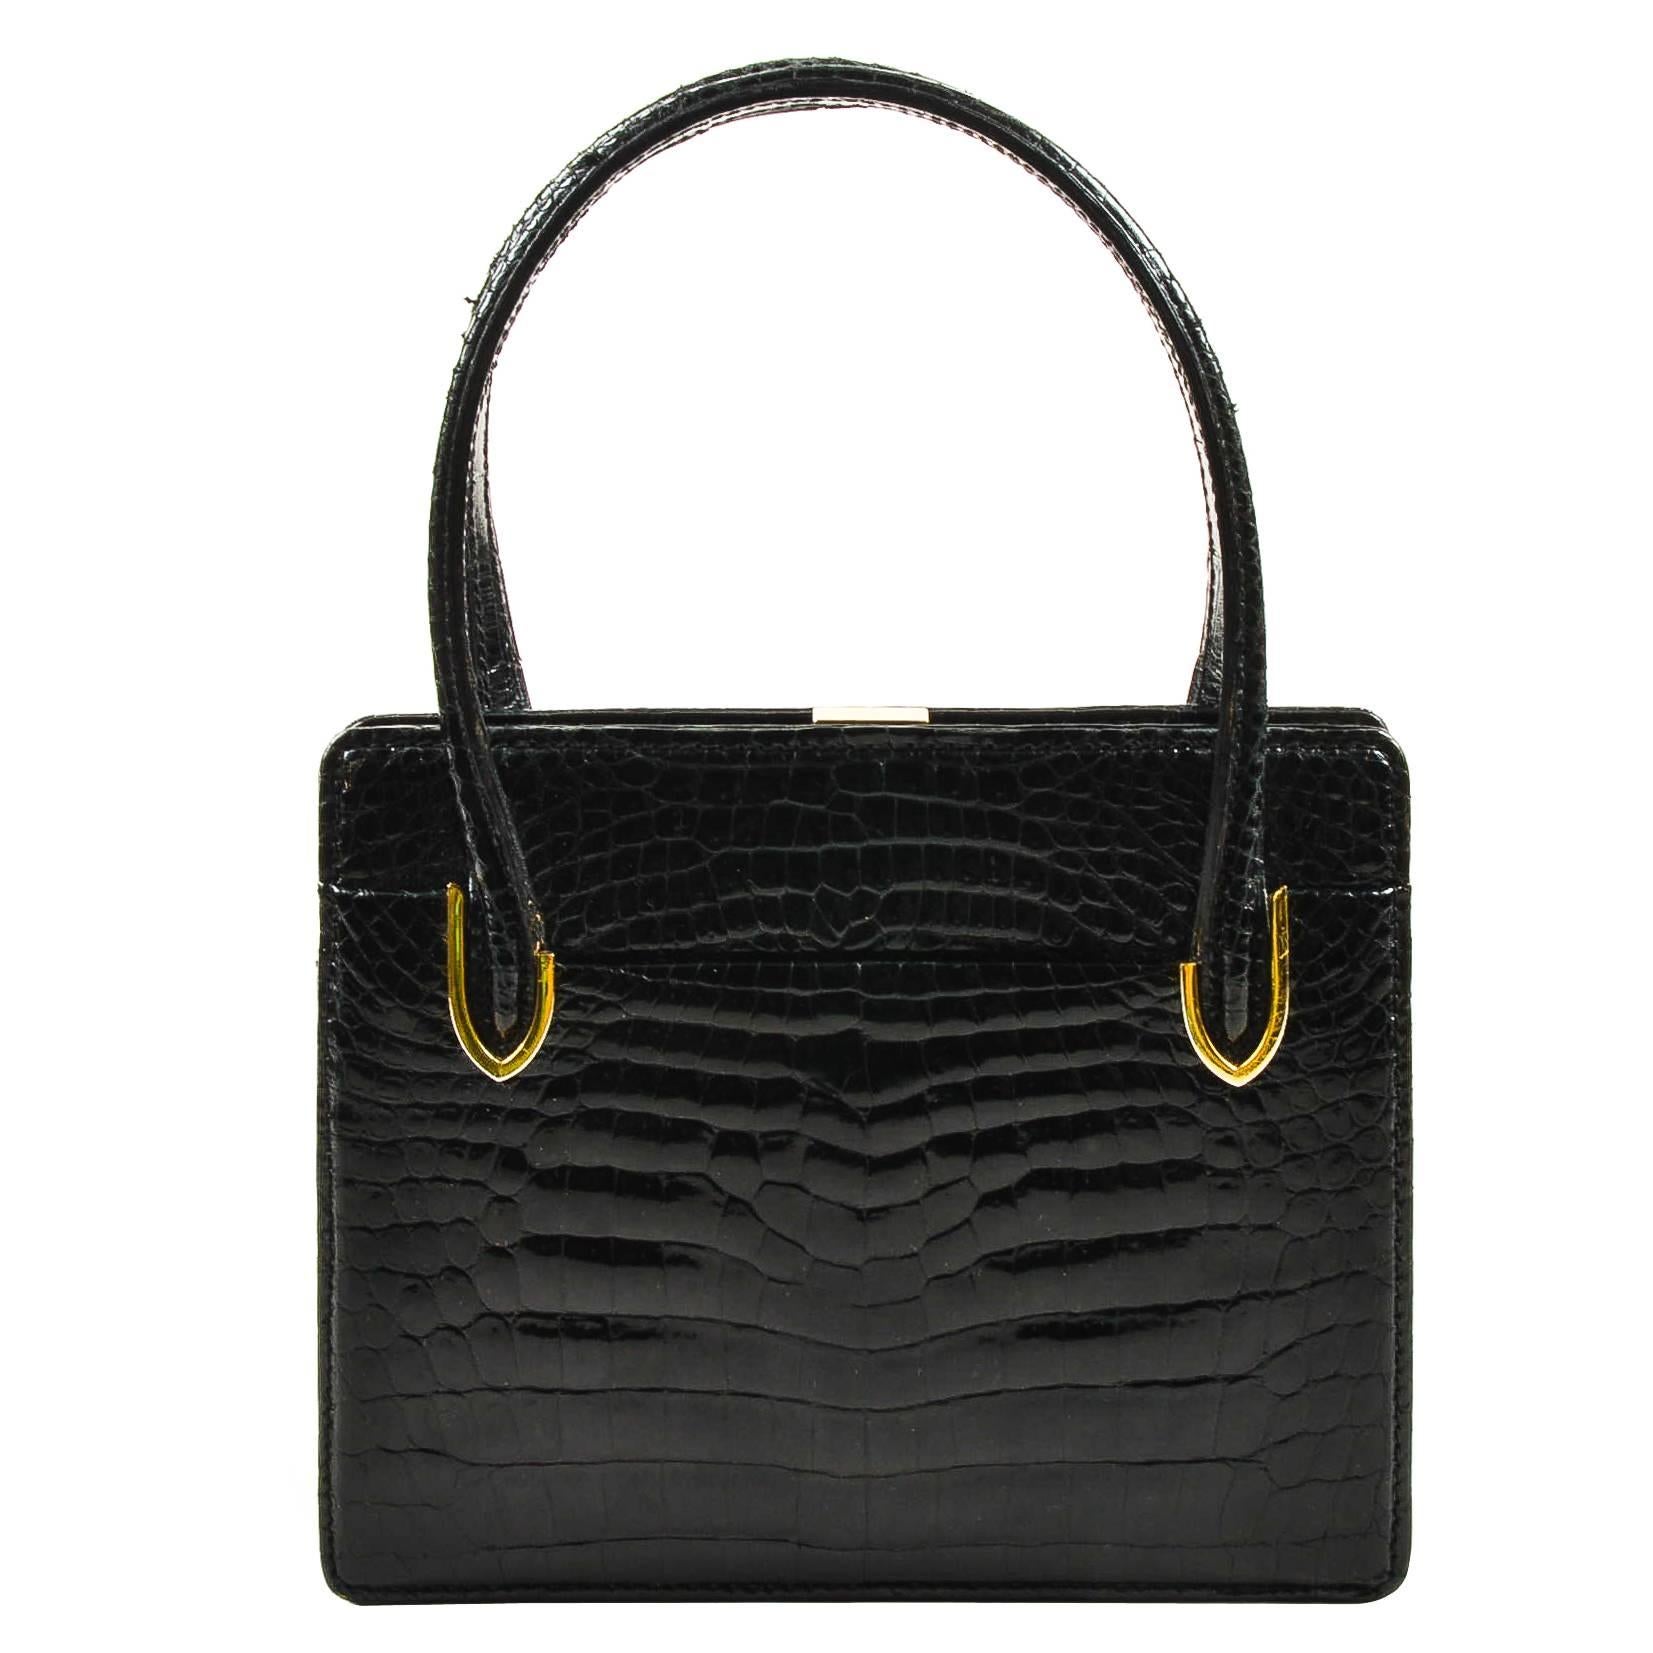 Vintage Gucci Black Crocodile Leather Structured Handbag For Sale